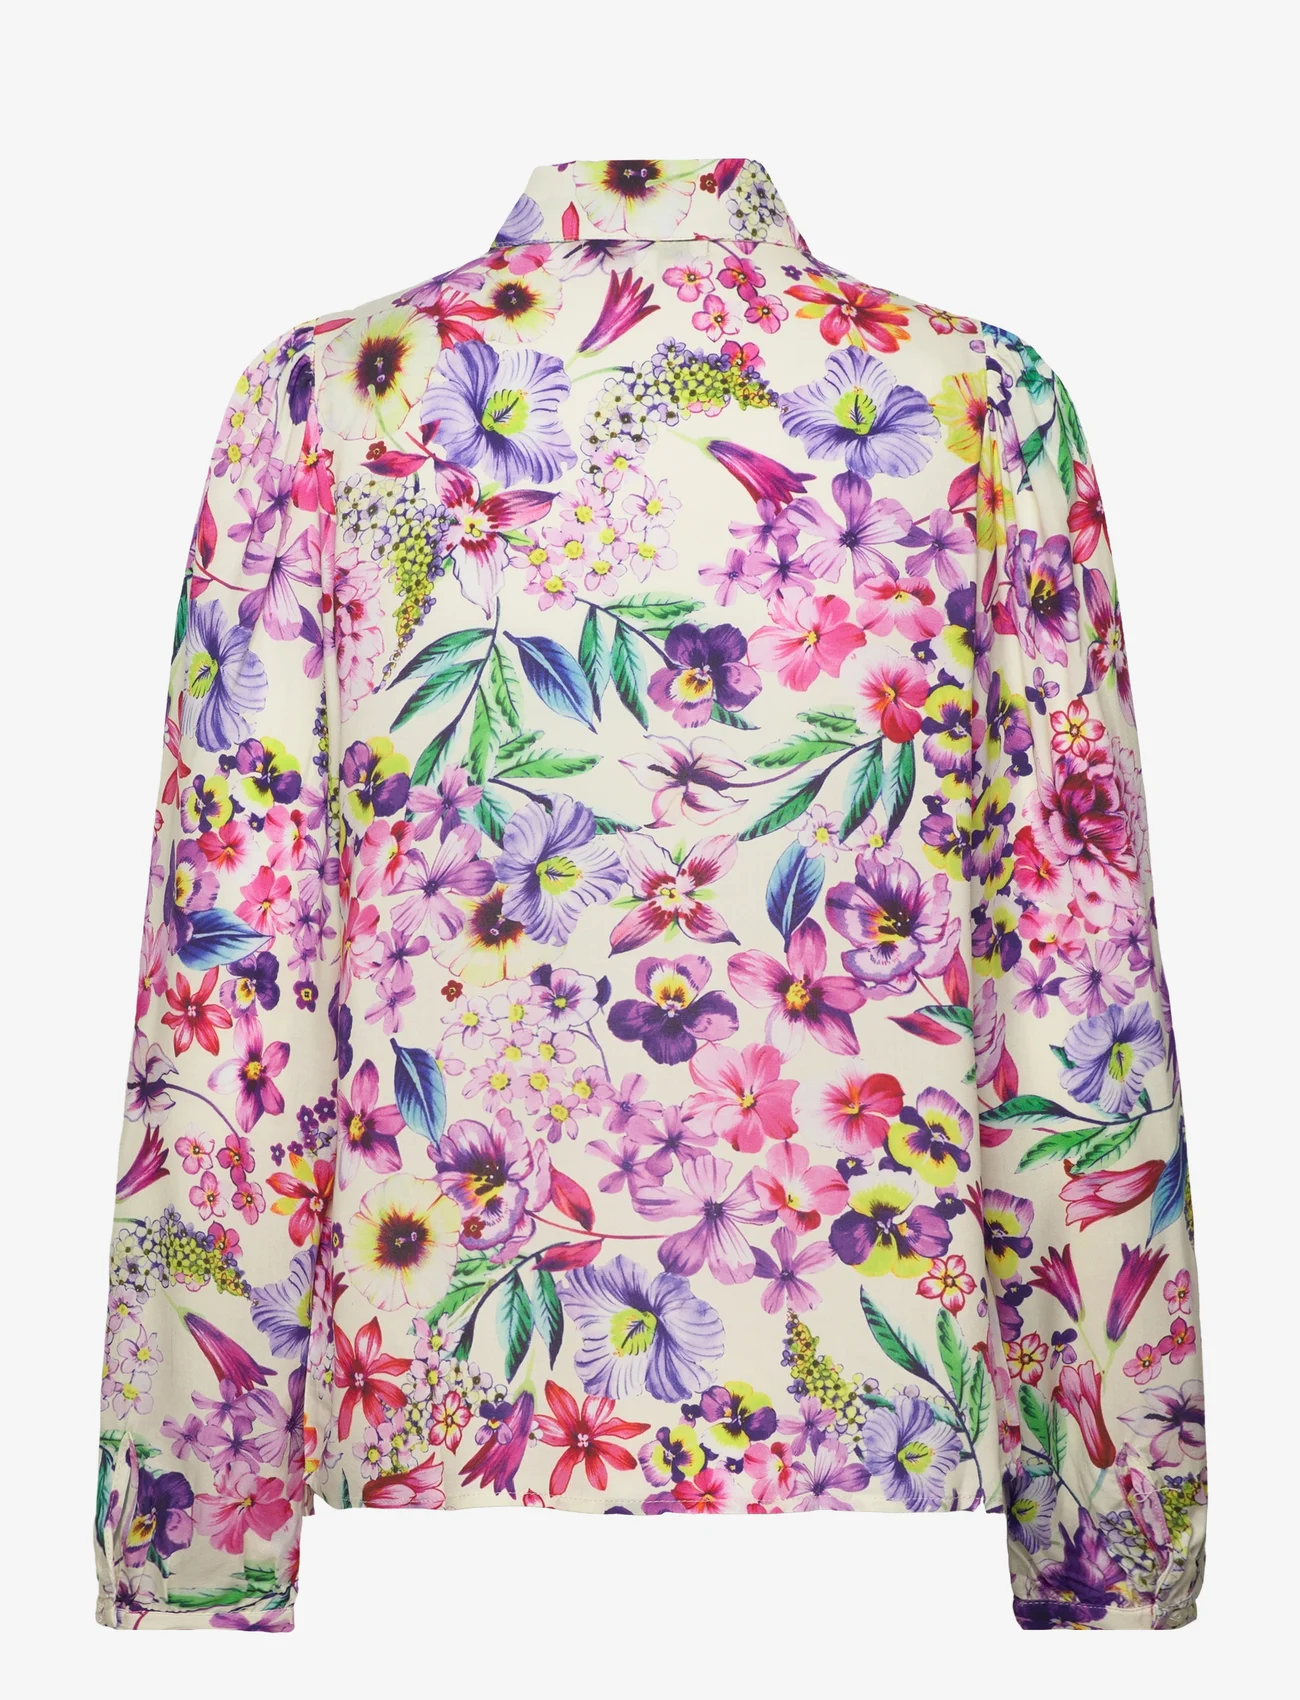 Lollys Laundry - Ellie Shirt - langermede skjorter - 74 flower print - 1